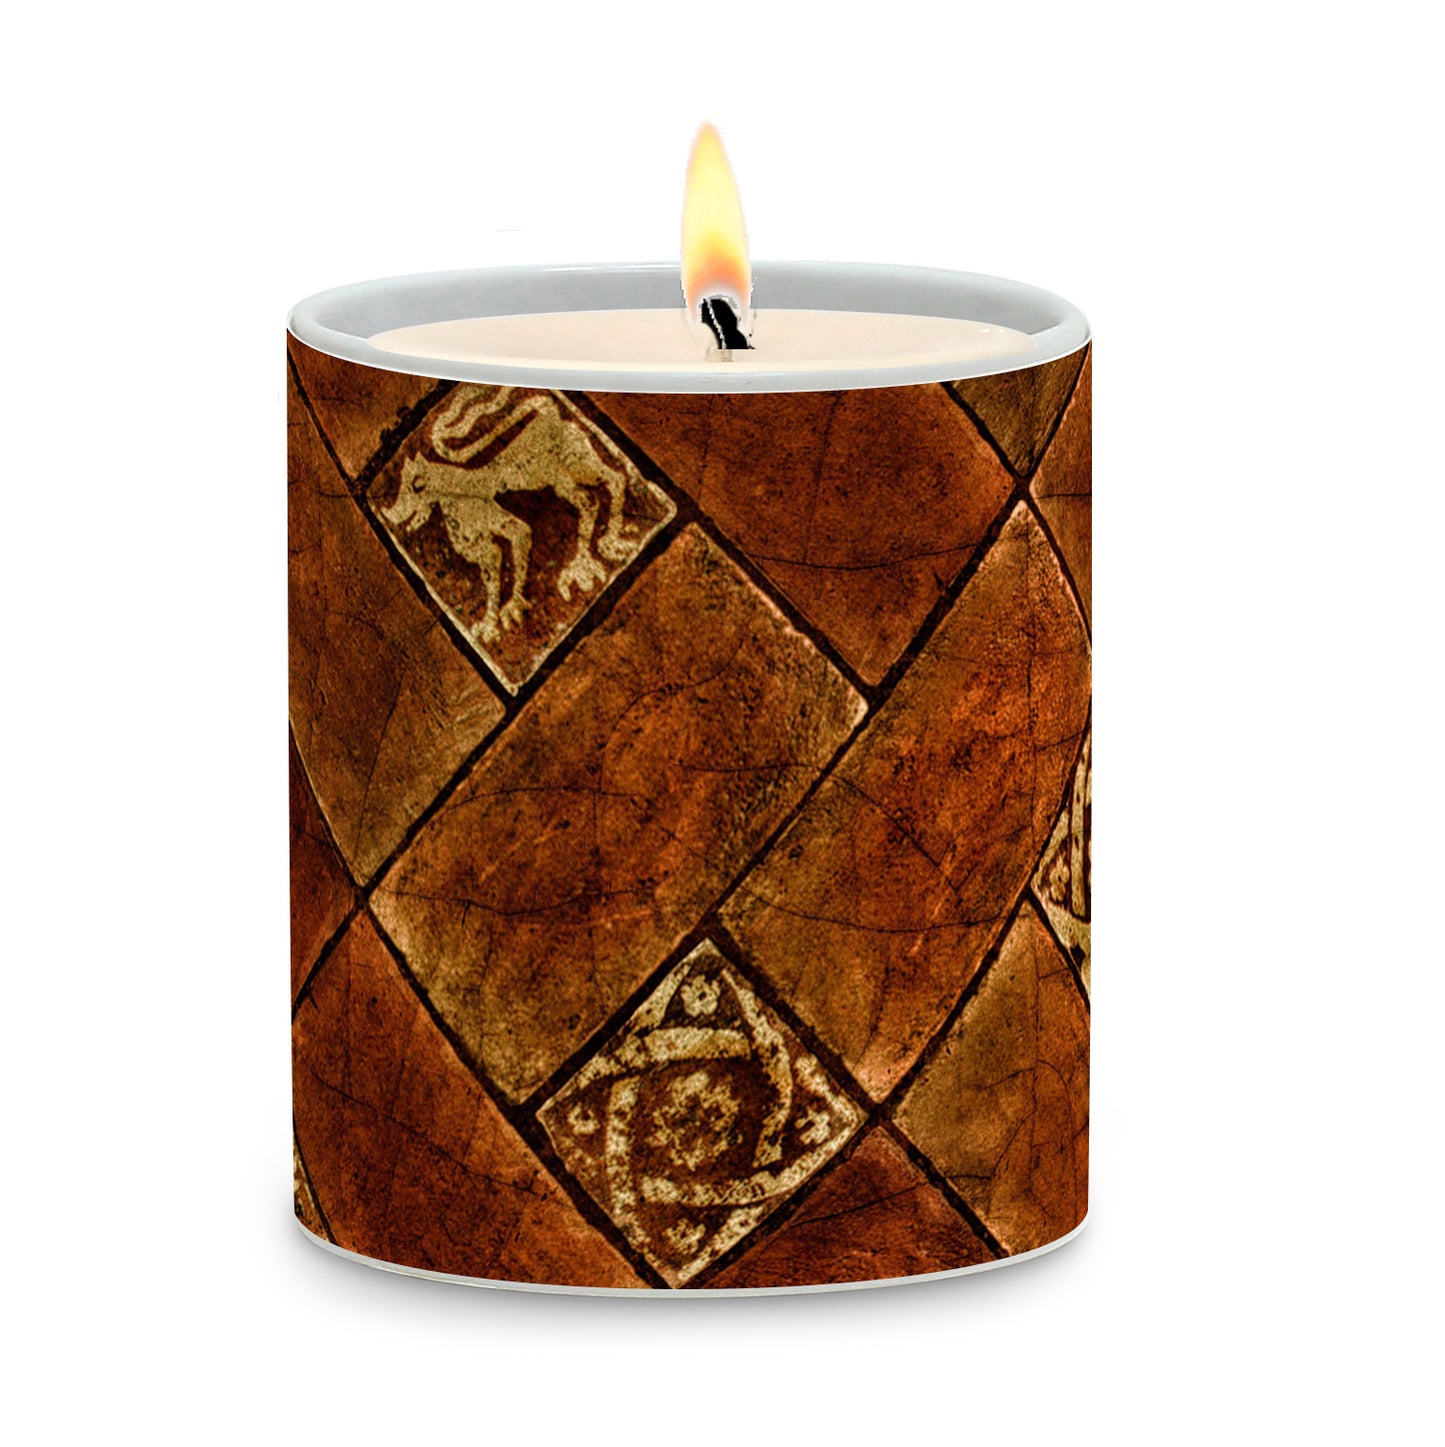 SUBLIMART: Tiles - Porcelain Soy Wax Candle (Design #TIL05)